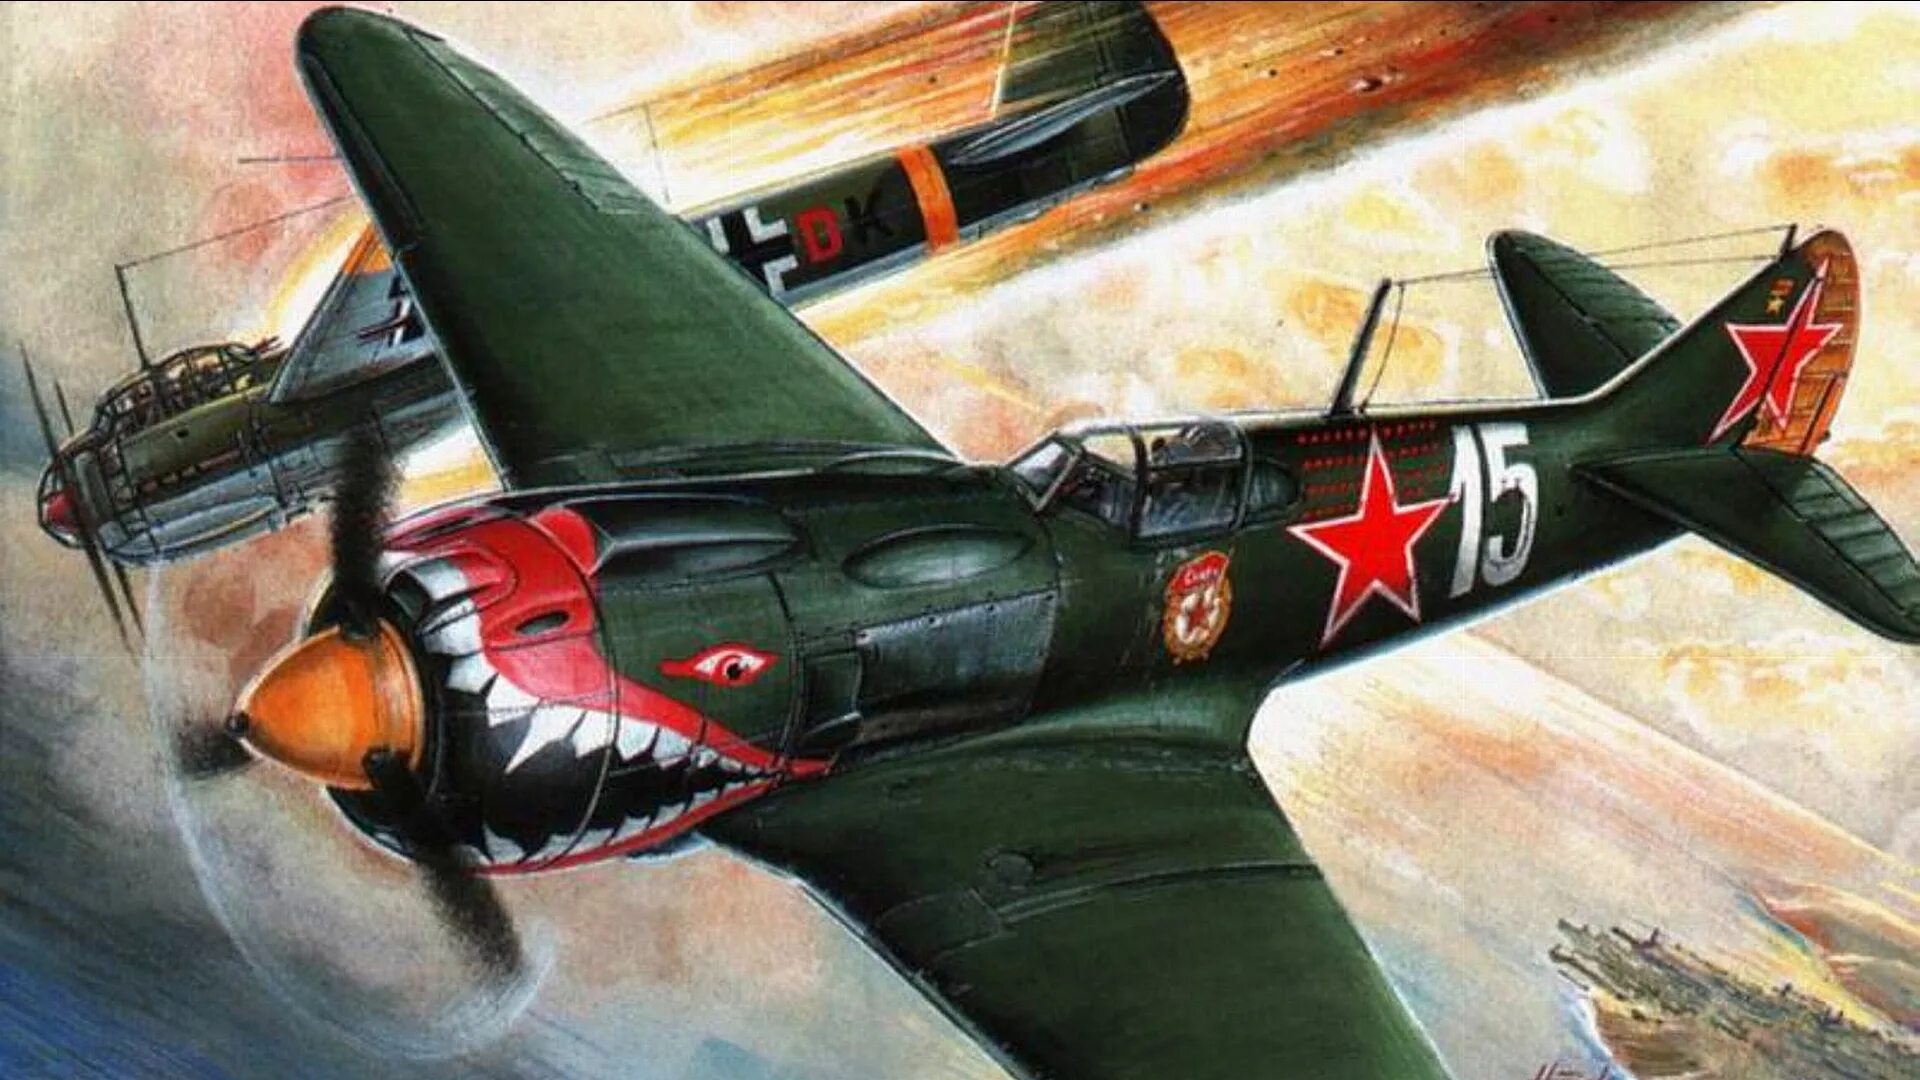 Истребитель Спитфайр второй мировой войны 1941-1945. Ла-5 Костылев. Советские военные самолеты второй мировой войны бомбардировщик.